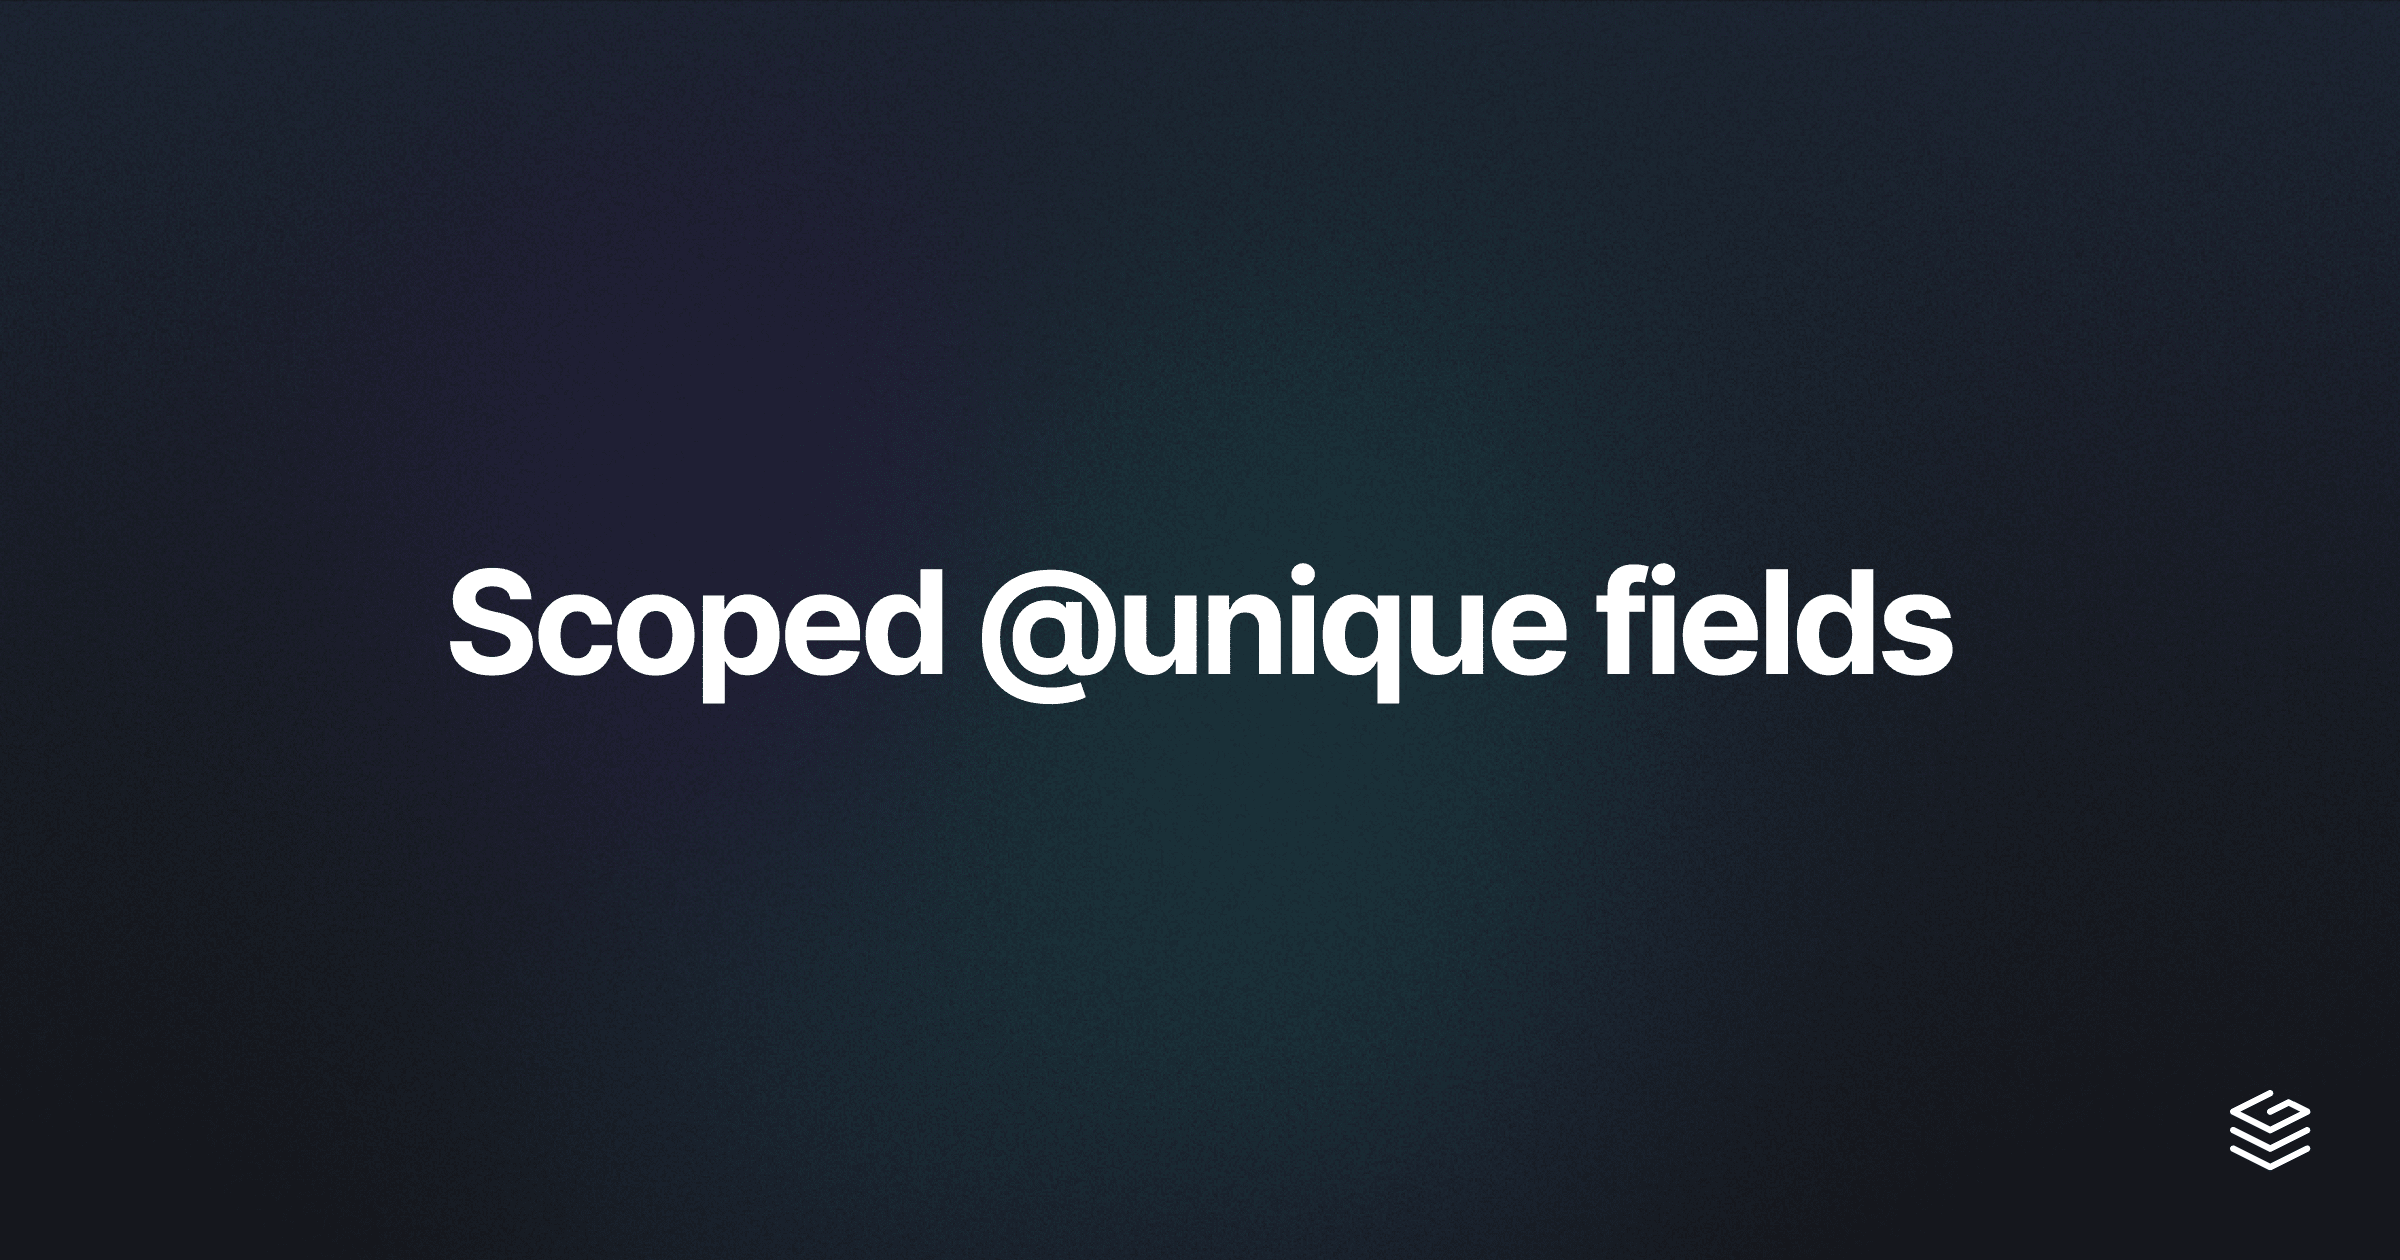 Scoped unique fields